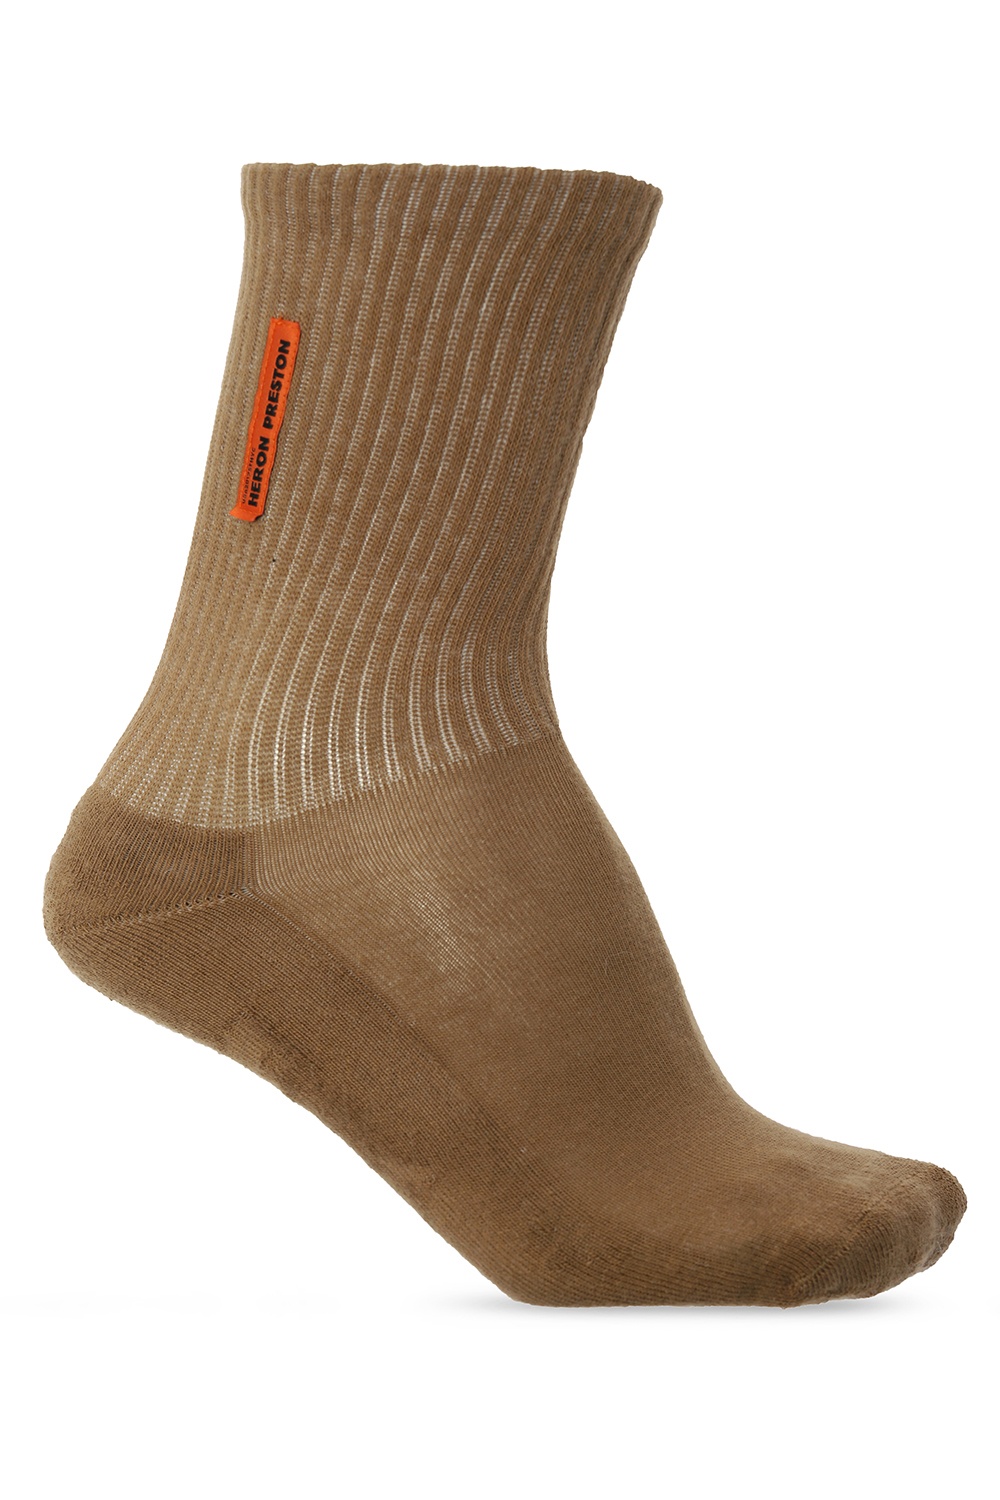 Heron Preston Logo socks